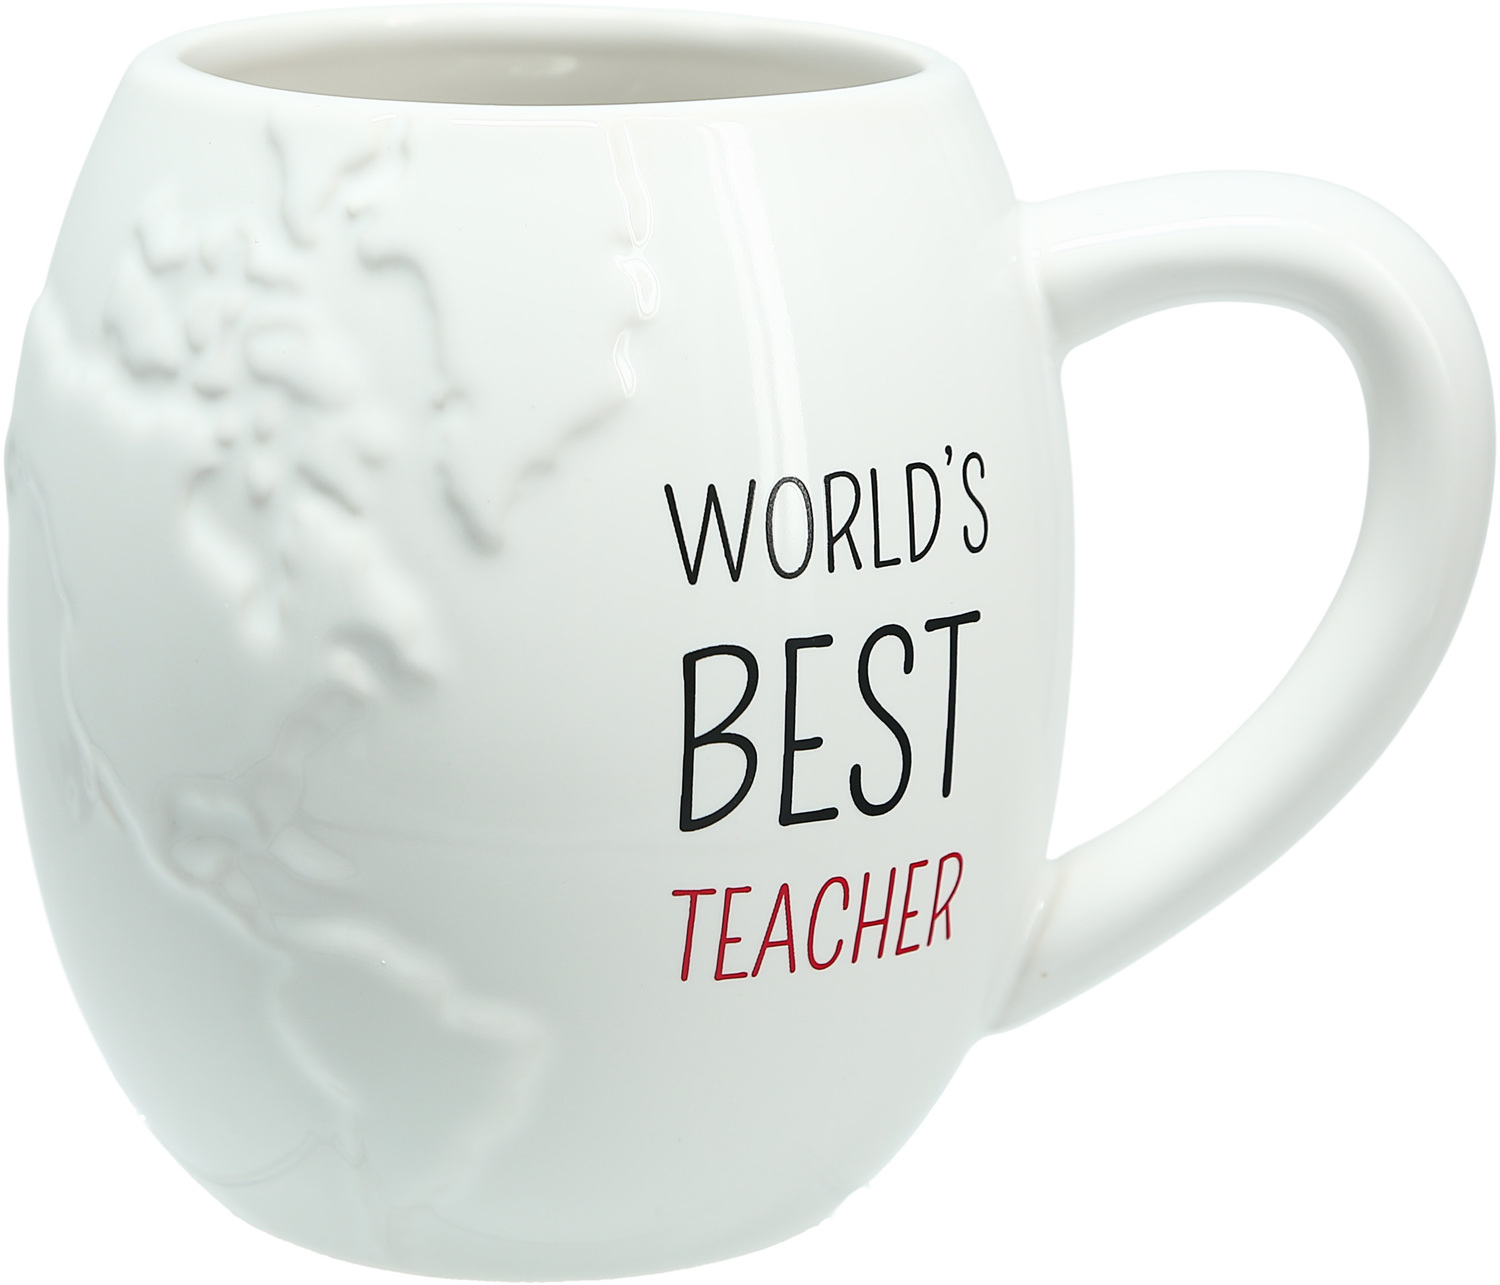 World's Best Teacher by Teachable Moments - World's Best Teacher - 22 oz Embossed Mug